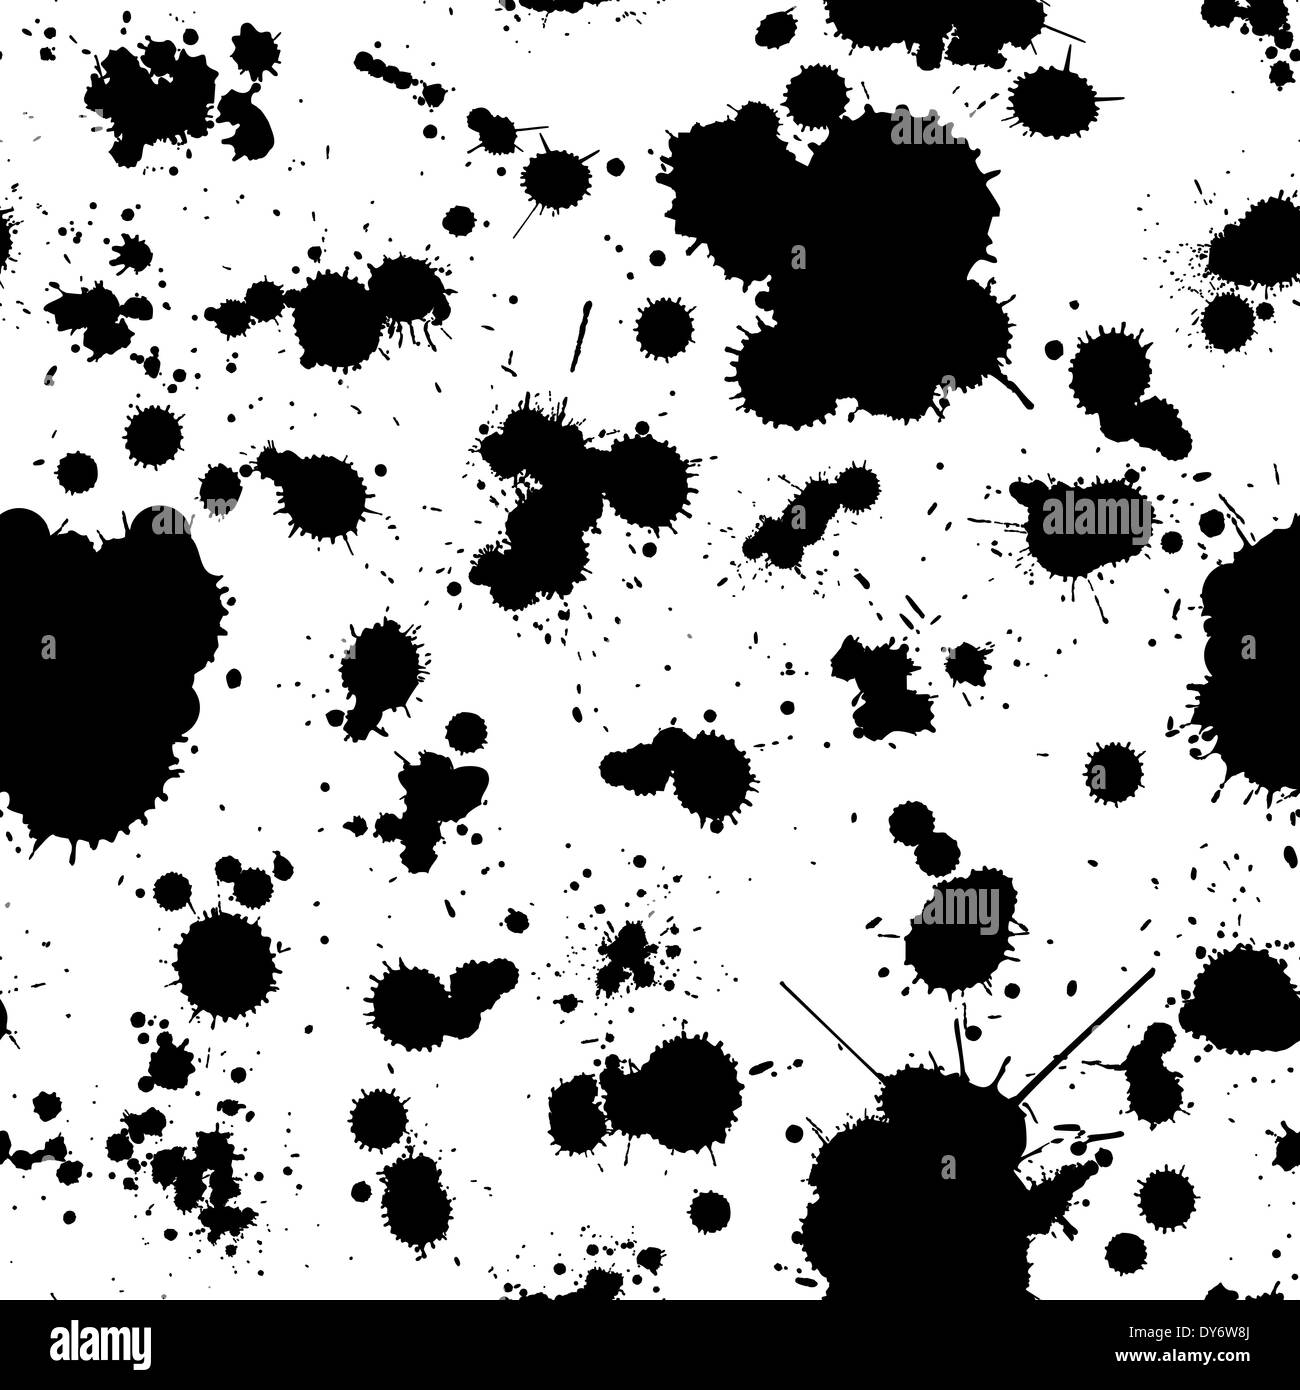 Abstract Grunge nahtlose Muster in schwarz und weiß, einfach zu bearbeiten, Hintergrund für Ihr design Stockfoto